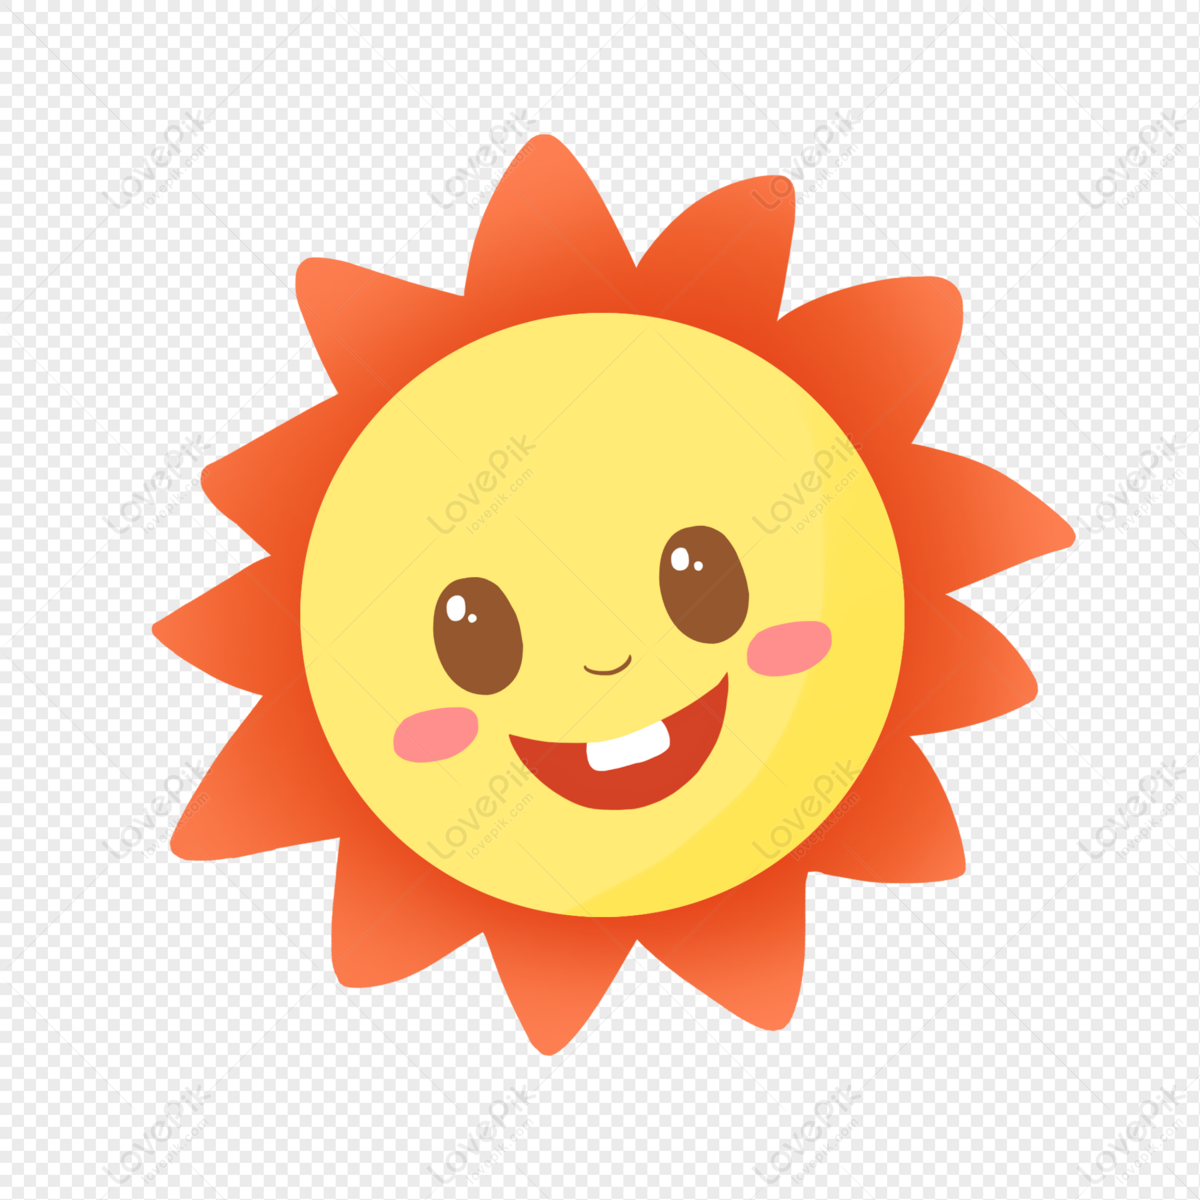 Thử tài vẽ tay với hình mặt trời mỉm cười đáng yêu! Lấy ngay file PNG miễn phí cho bản thân. Dùng hình hoạt hình này để tạo nên những nội dung vui nhộn cho những người bạn của bạn!